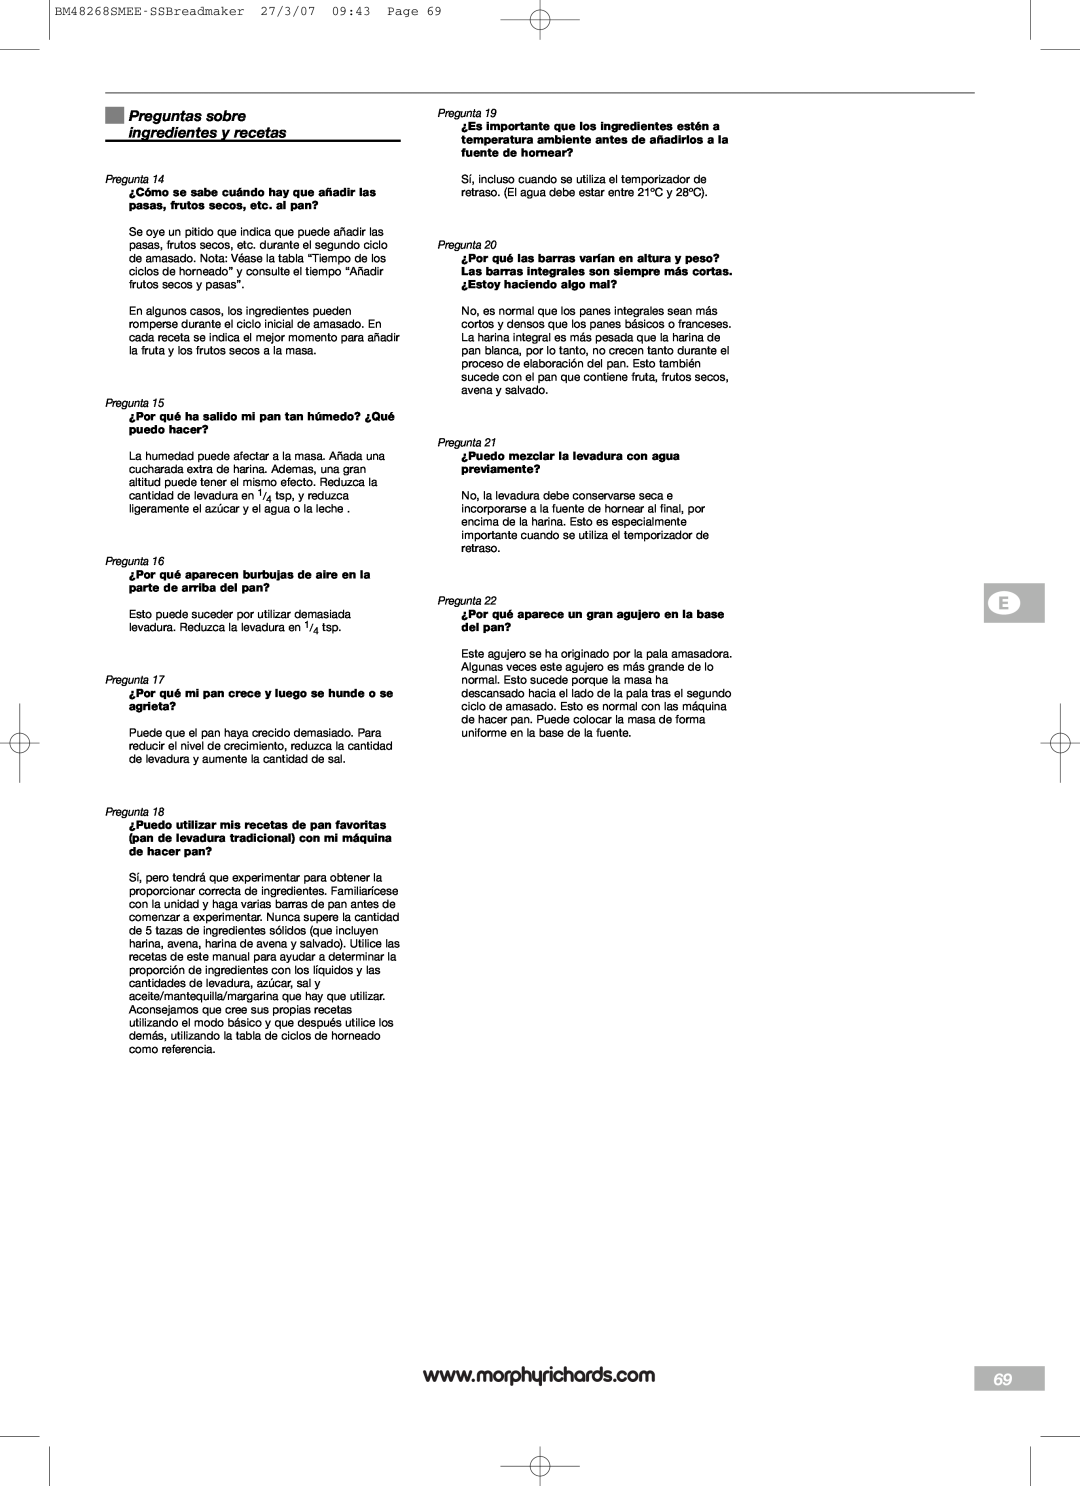 Morphy Richards manual Preguntas sobre ingredientes y recetas, BM48268SMEE-SSBreadmaker27/3/07 09:43 Page 